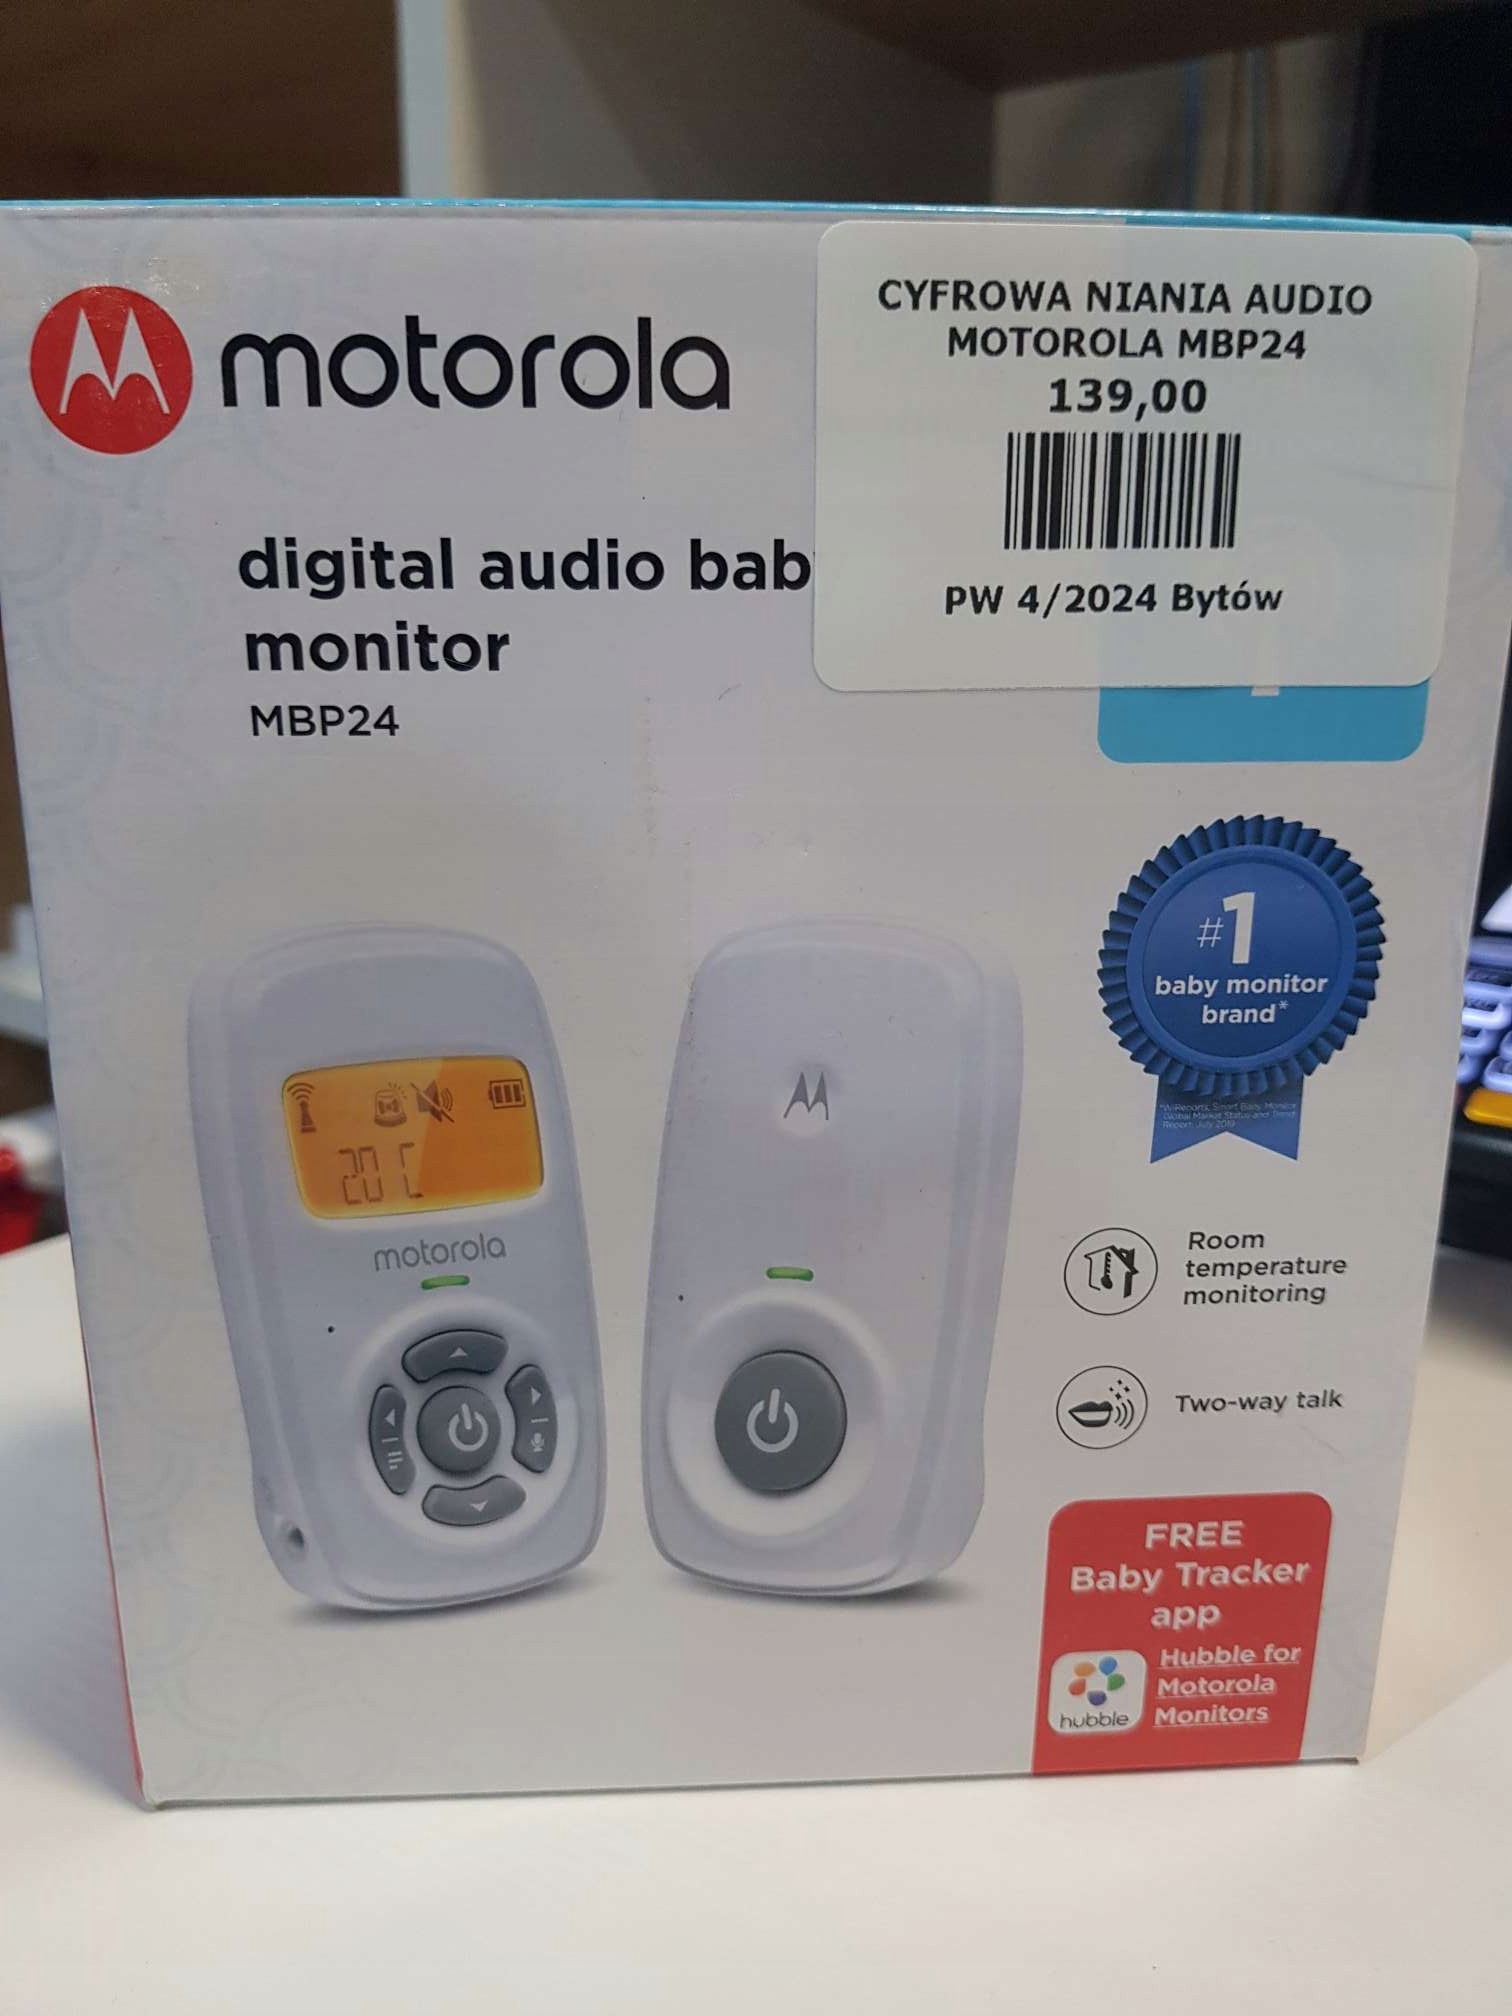 Cyfrowa niania elektroniczna Motorola MBP24